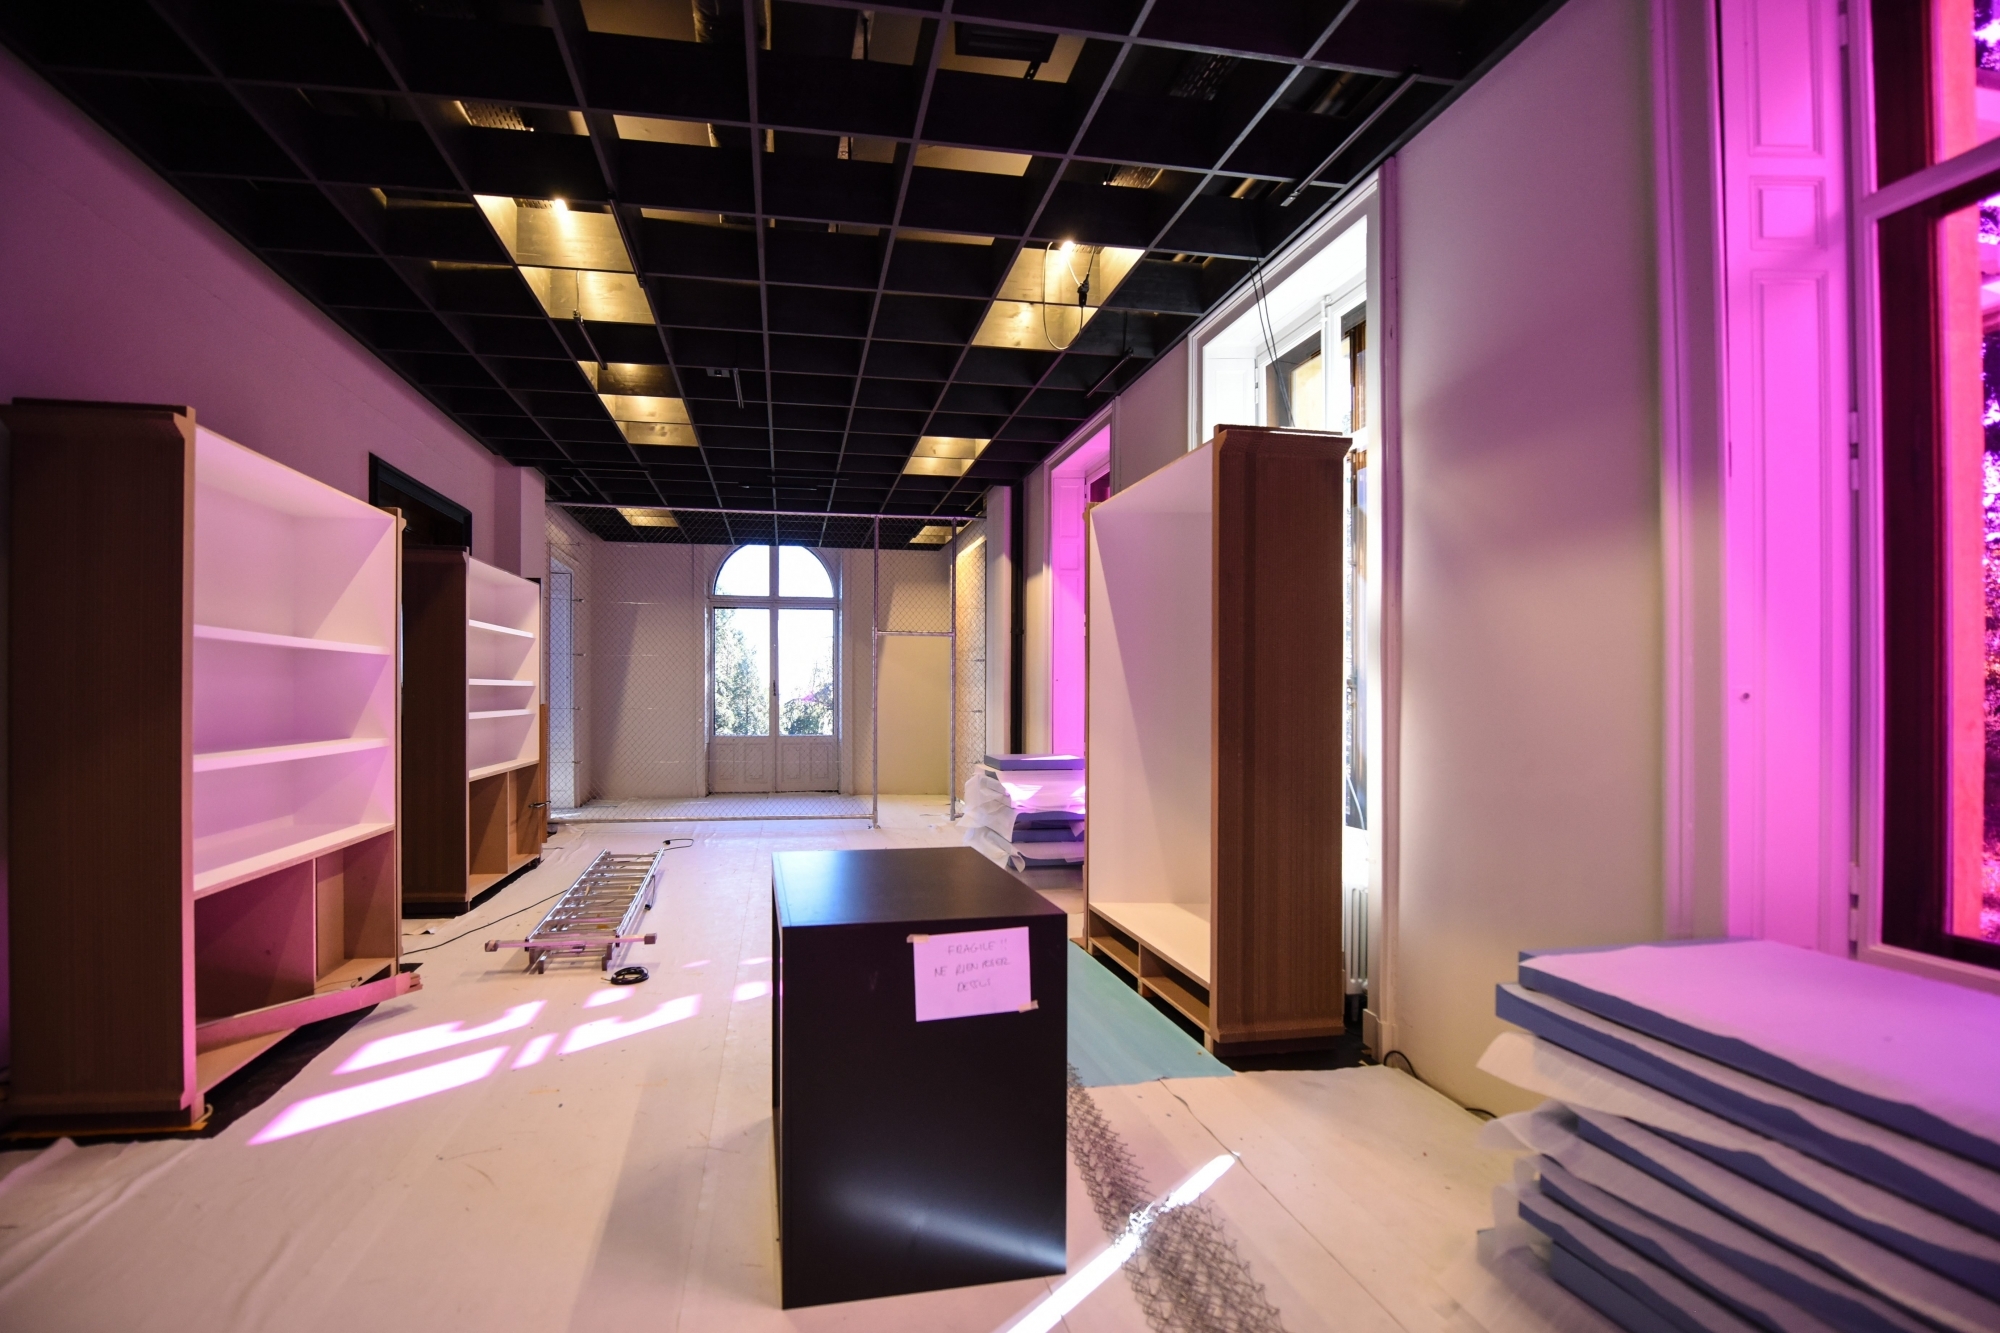 Chacun des neufs espaces de la villa de Pury sera autonome, permettant l'évolution de l'exposition du Musée d'ethnographie de Neuchâtel.   